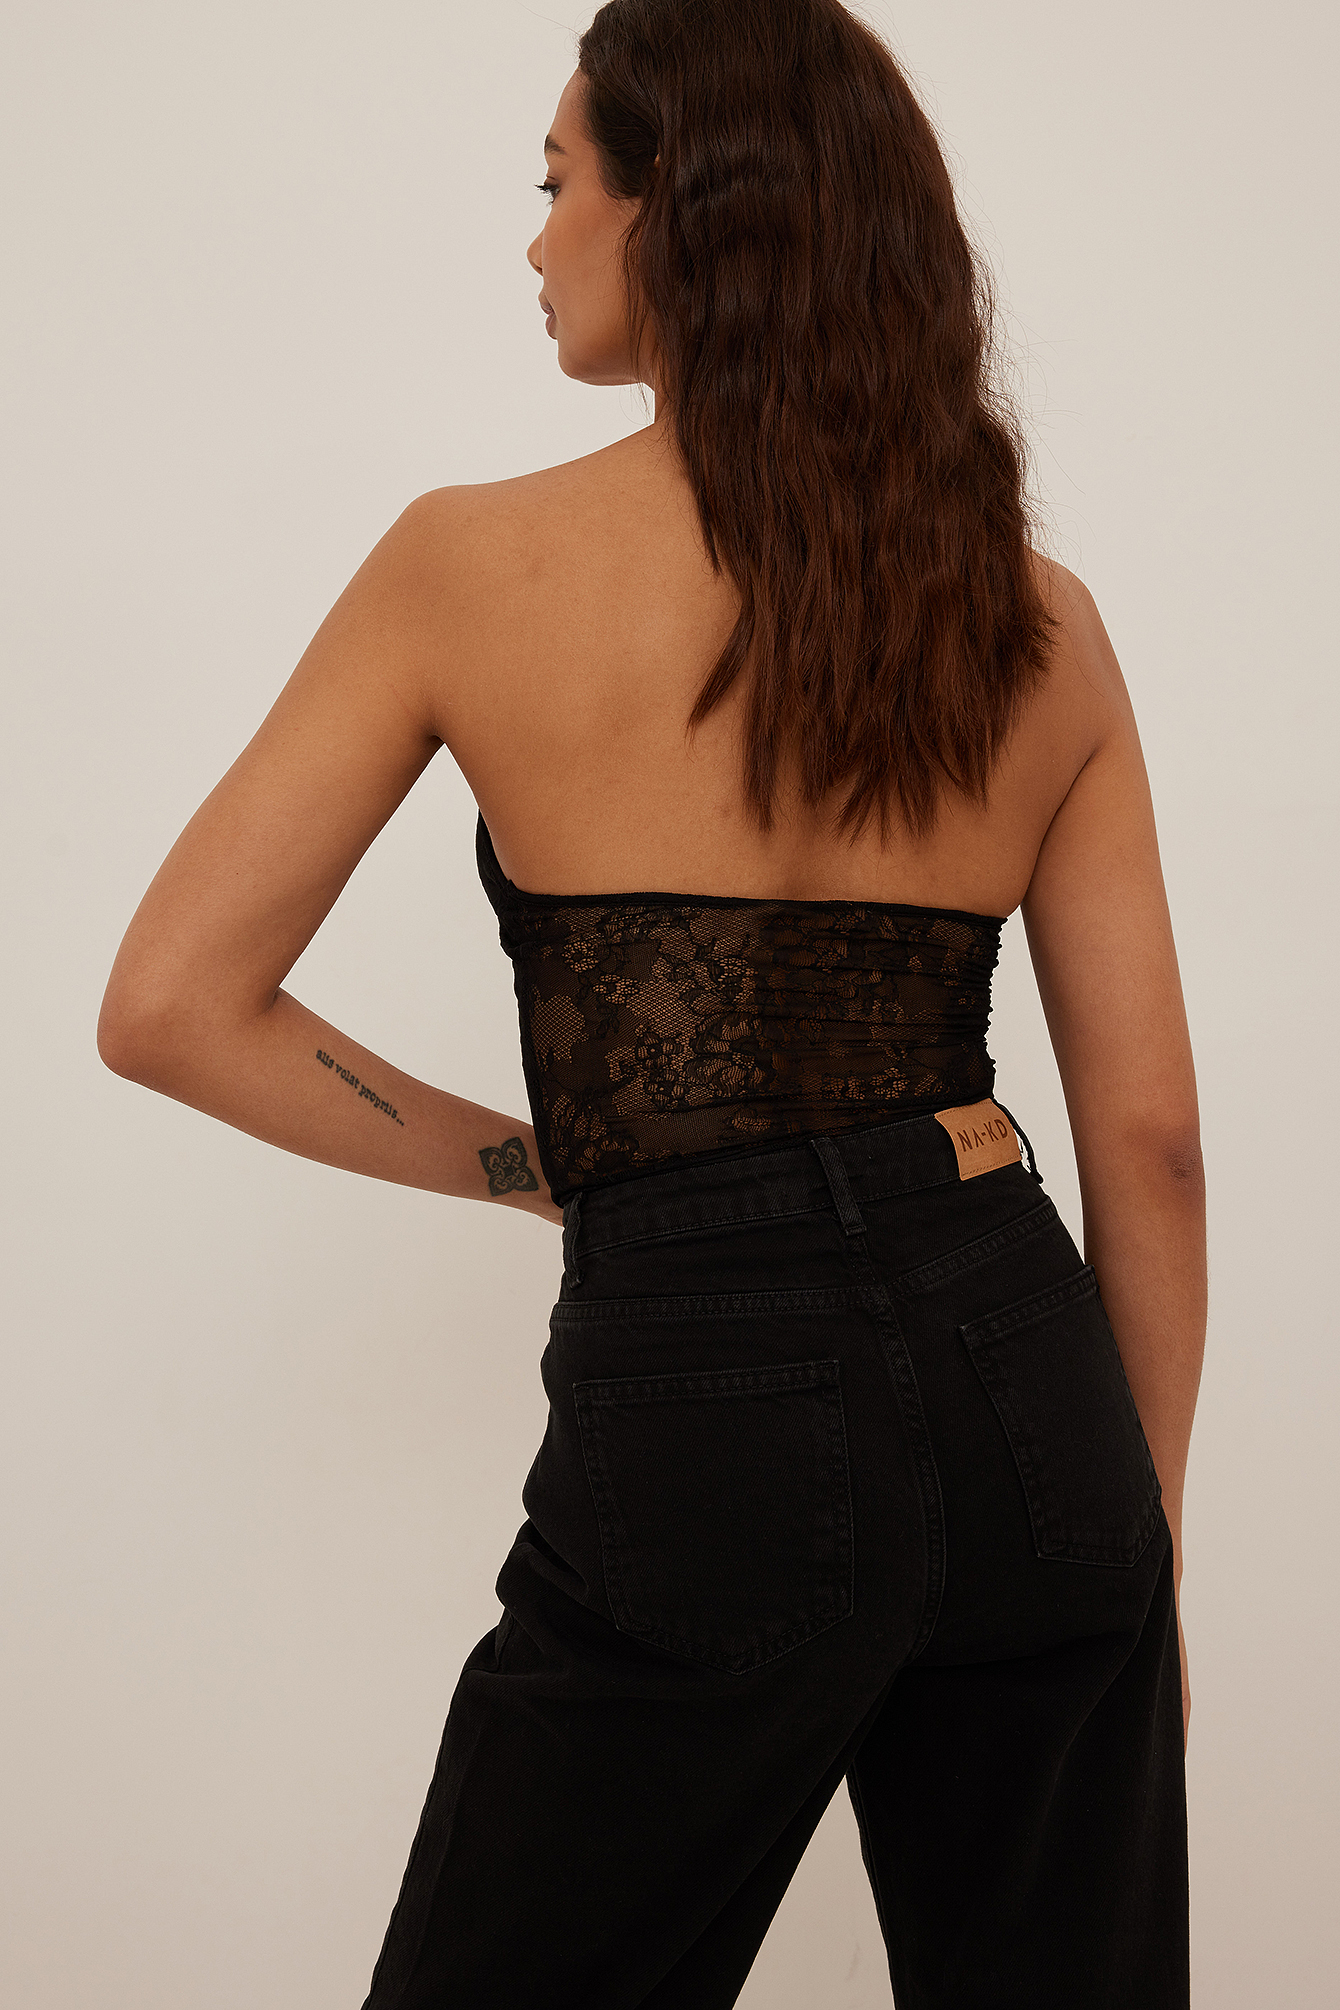 New Look Black Lace Diamante Detail Push Up Bodysuit